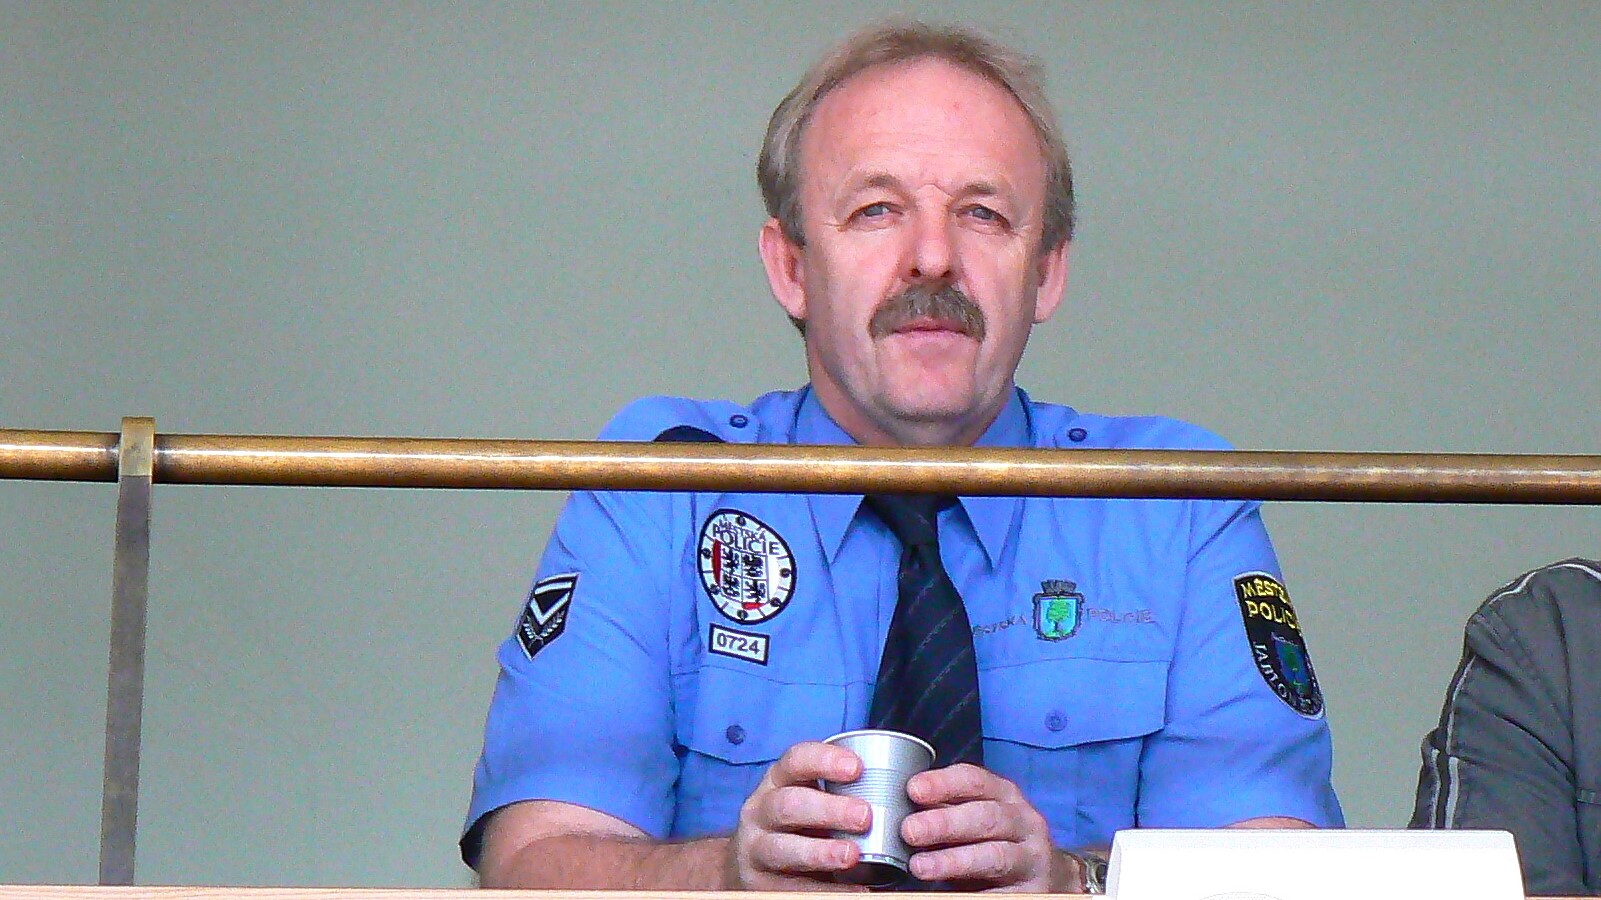 Policejní plukovník Jiří Rulc obviněn, že používá titul Ph.D. neoprávněně (original, zmenseny)